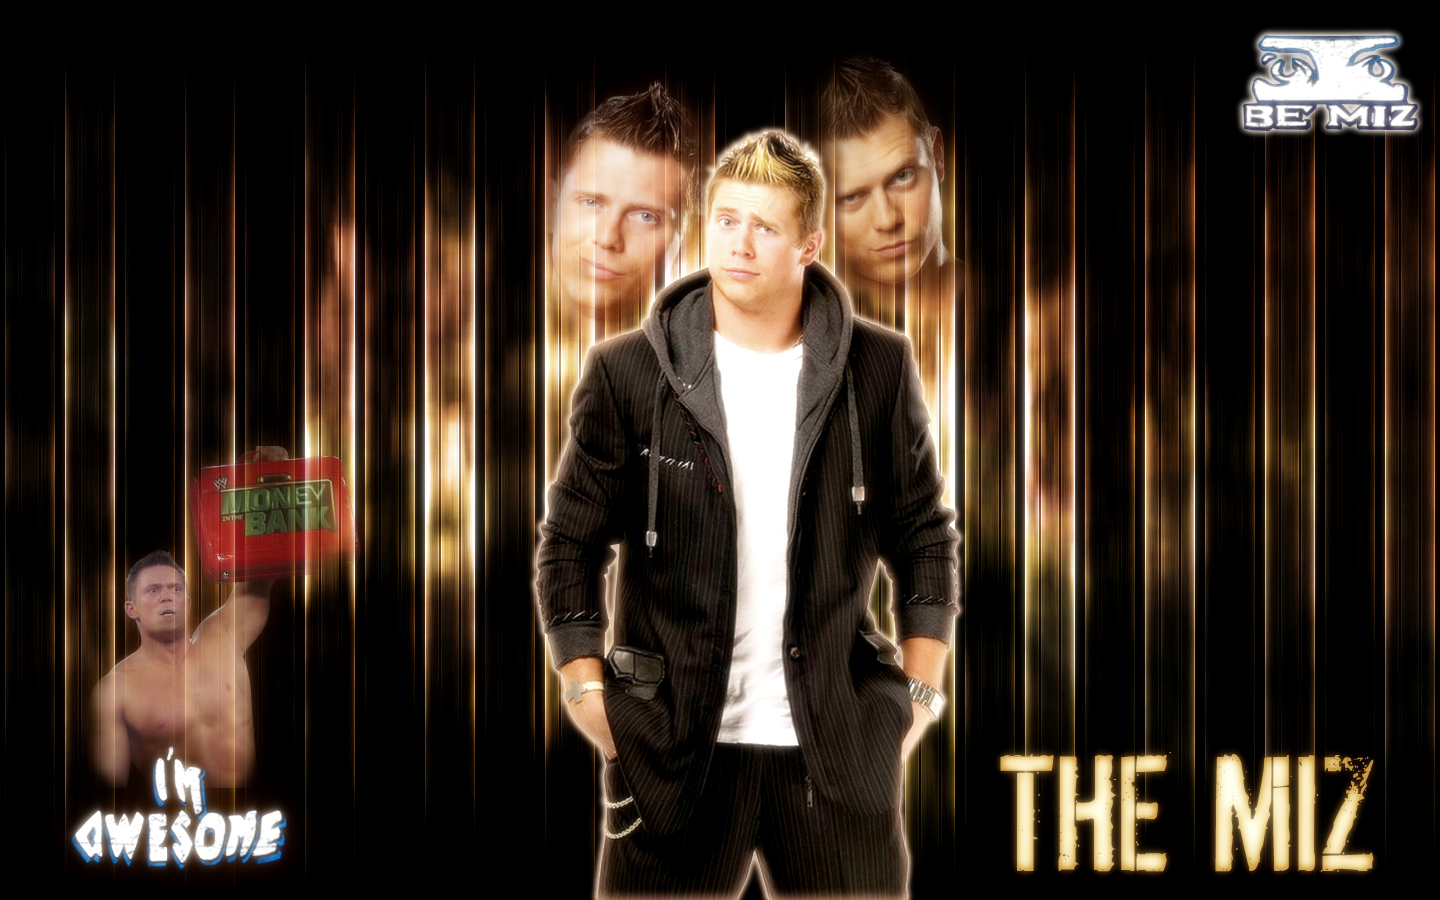 The Miz - WWE Wallpaper (31689180) - Fanpop